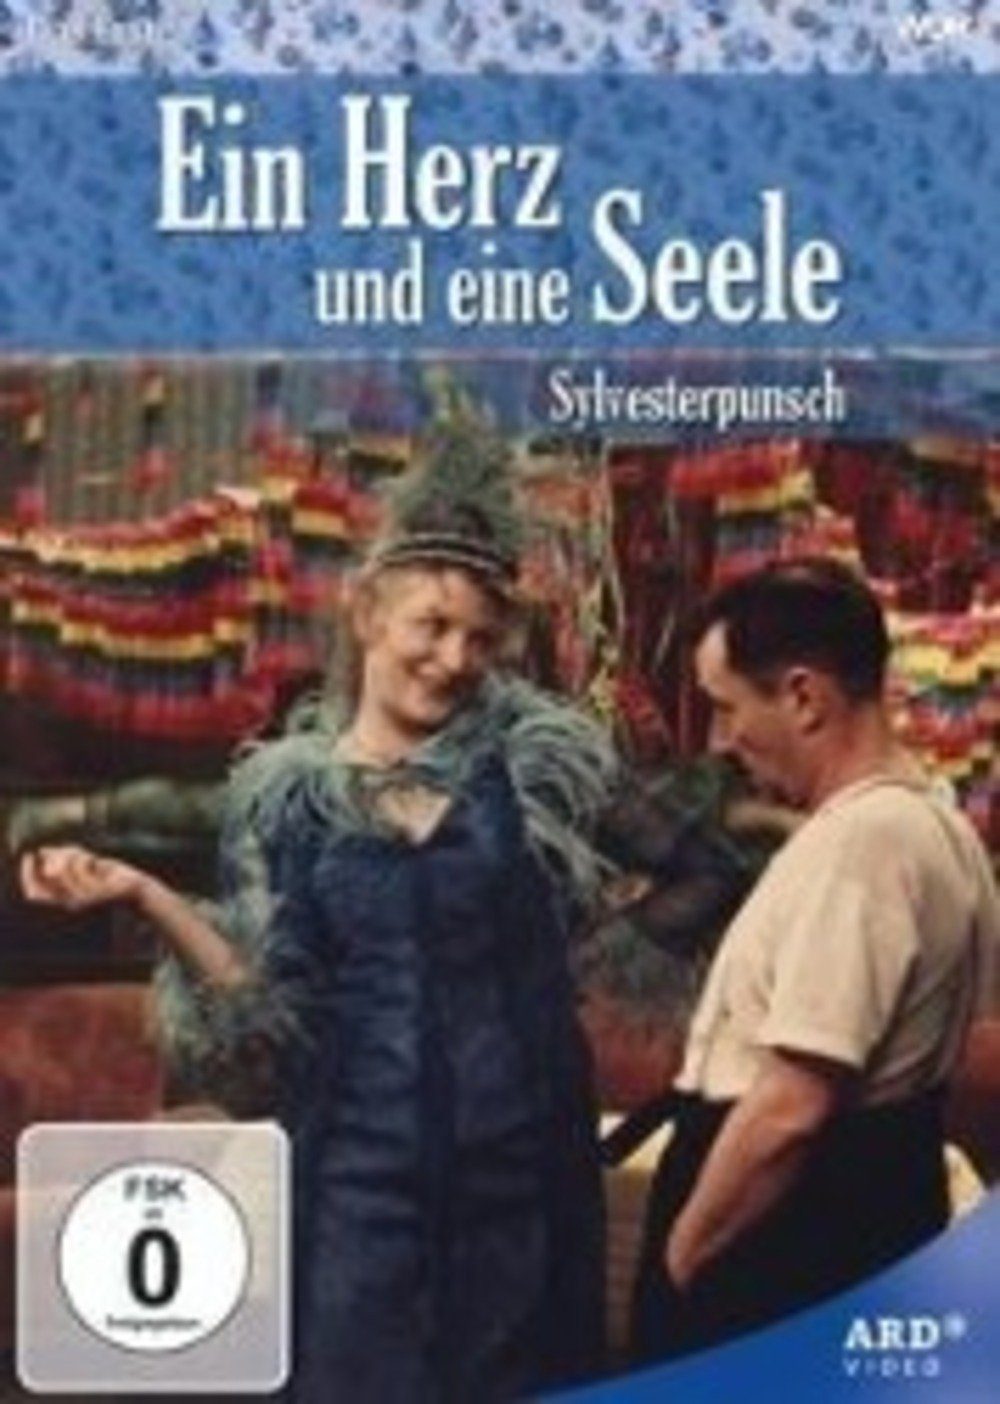 Studio Hamburg DVD Ein Herz und eine Seele - Silvesterpunsch